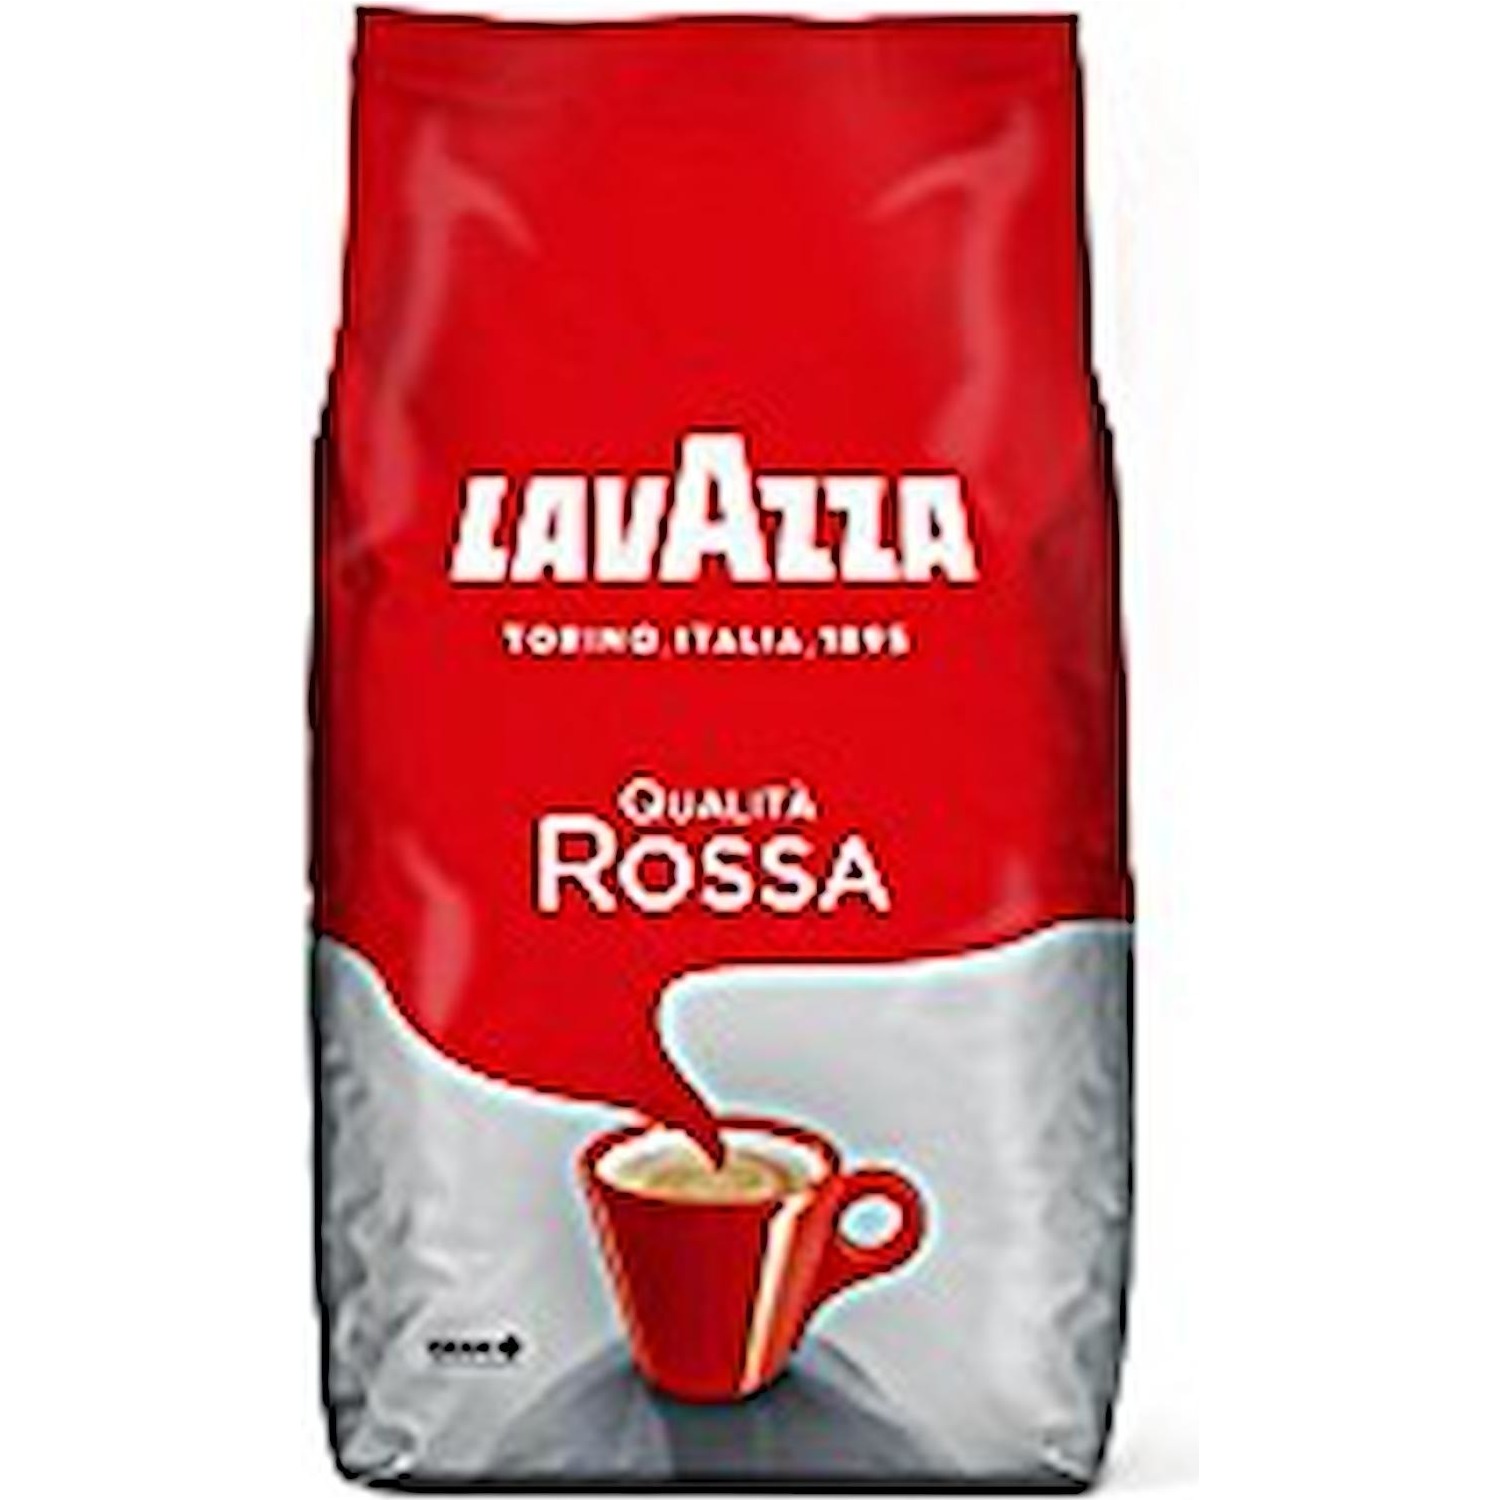 Immagine per Lavazza Qualita' Rossa 1Kg Caffe' in grani da DIMOStore